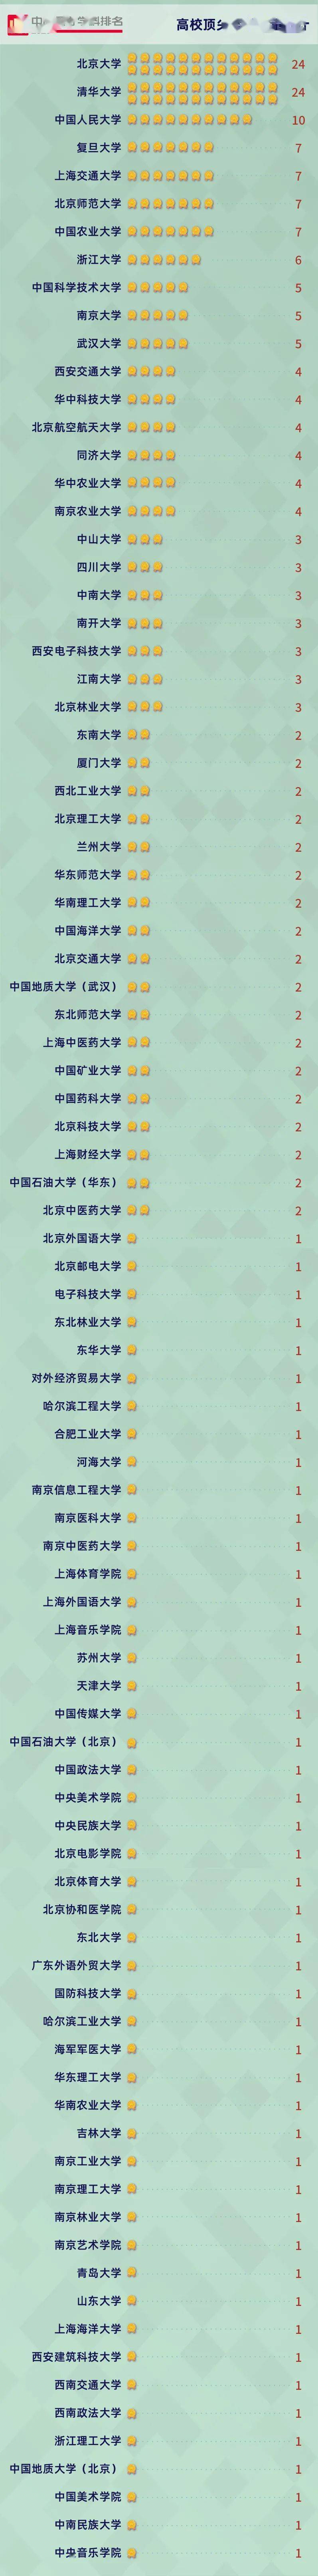 2020年何姓的排名_最新权威榜单!2020中国最好学科排名!